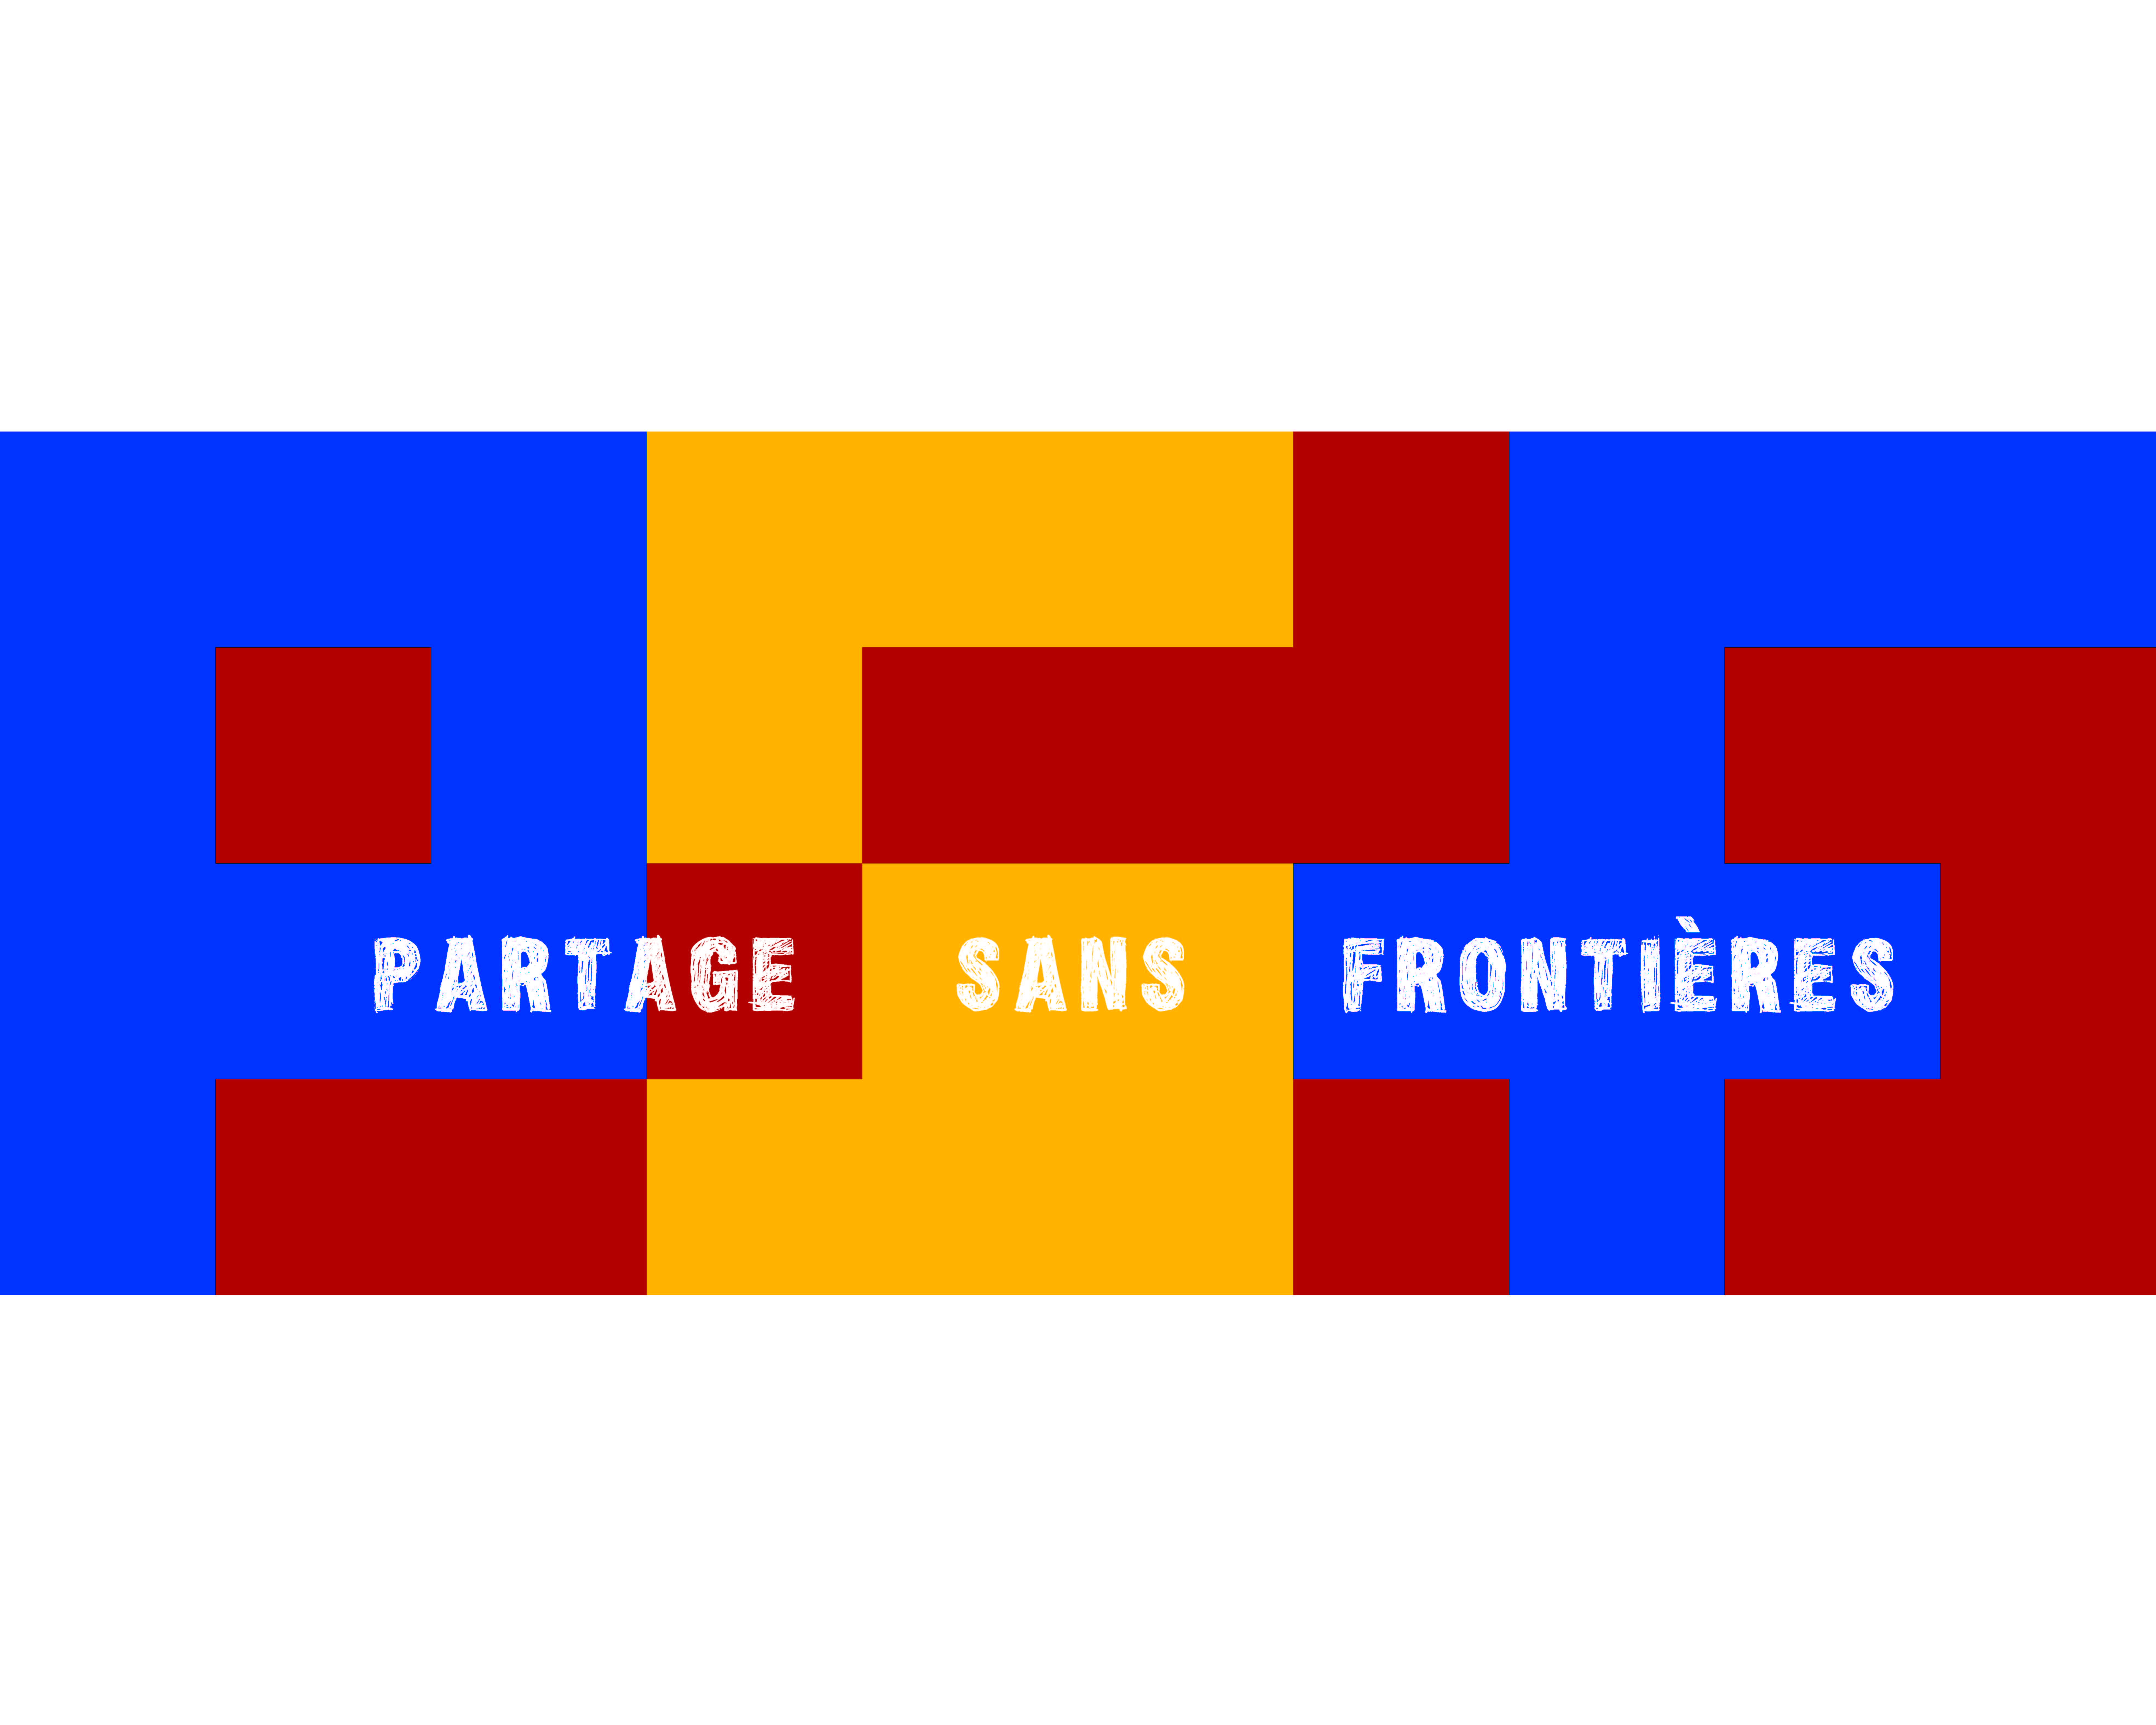 PARTAGE SANS FRONTIÈRES